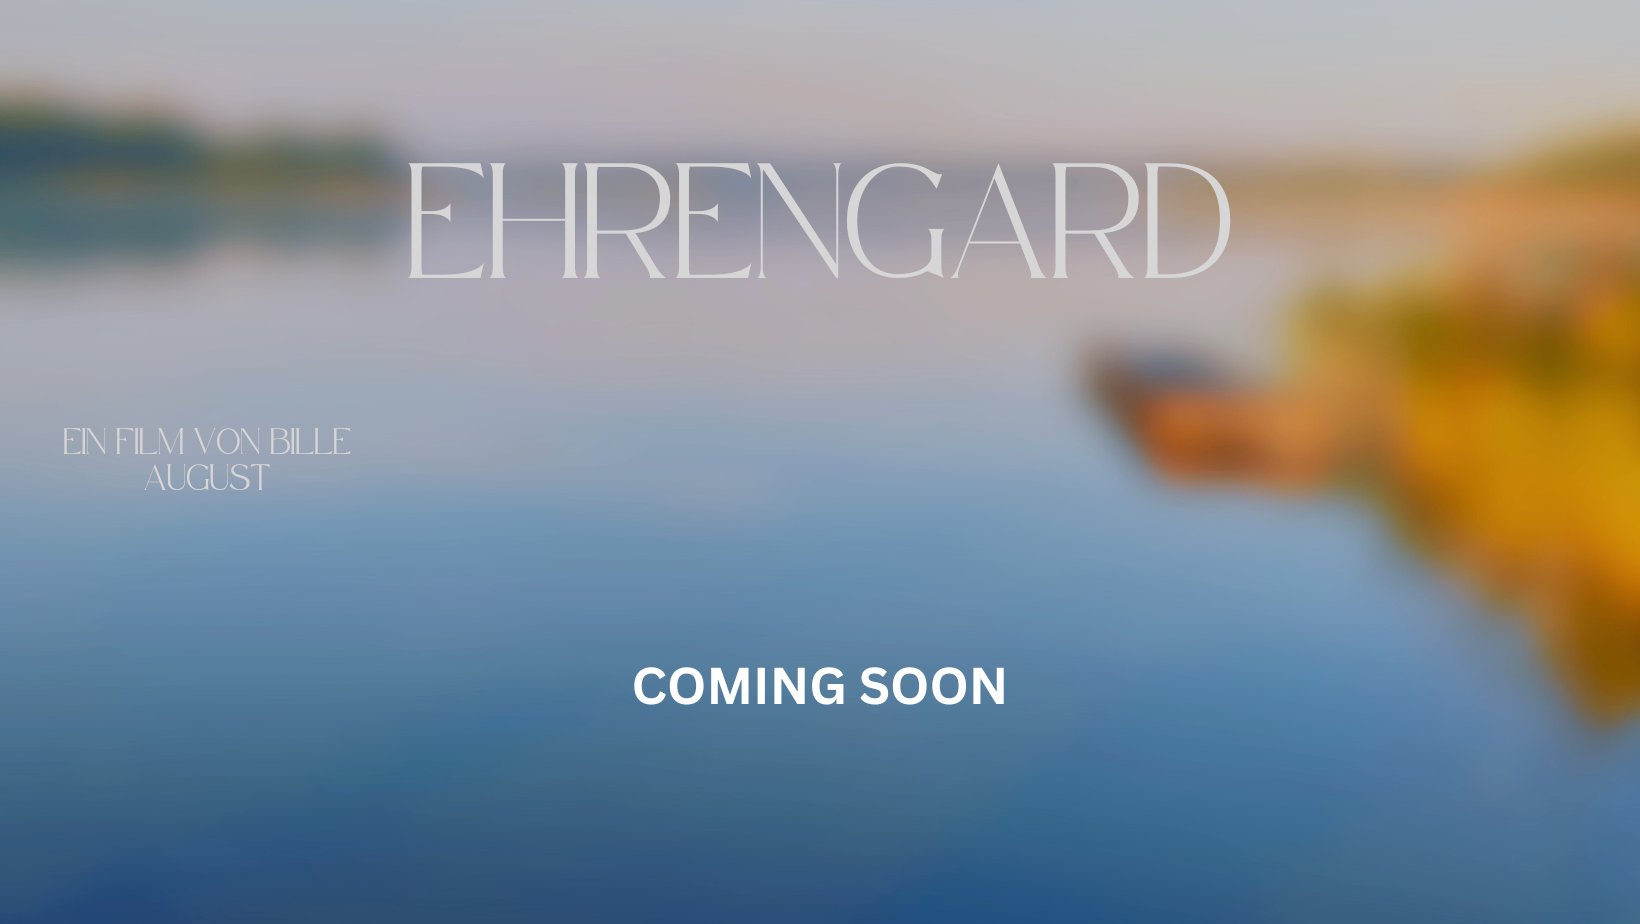 Bille August films the novel “Ehrengard” by Tania Blixen for Netflix